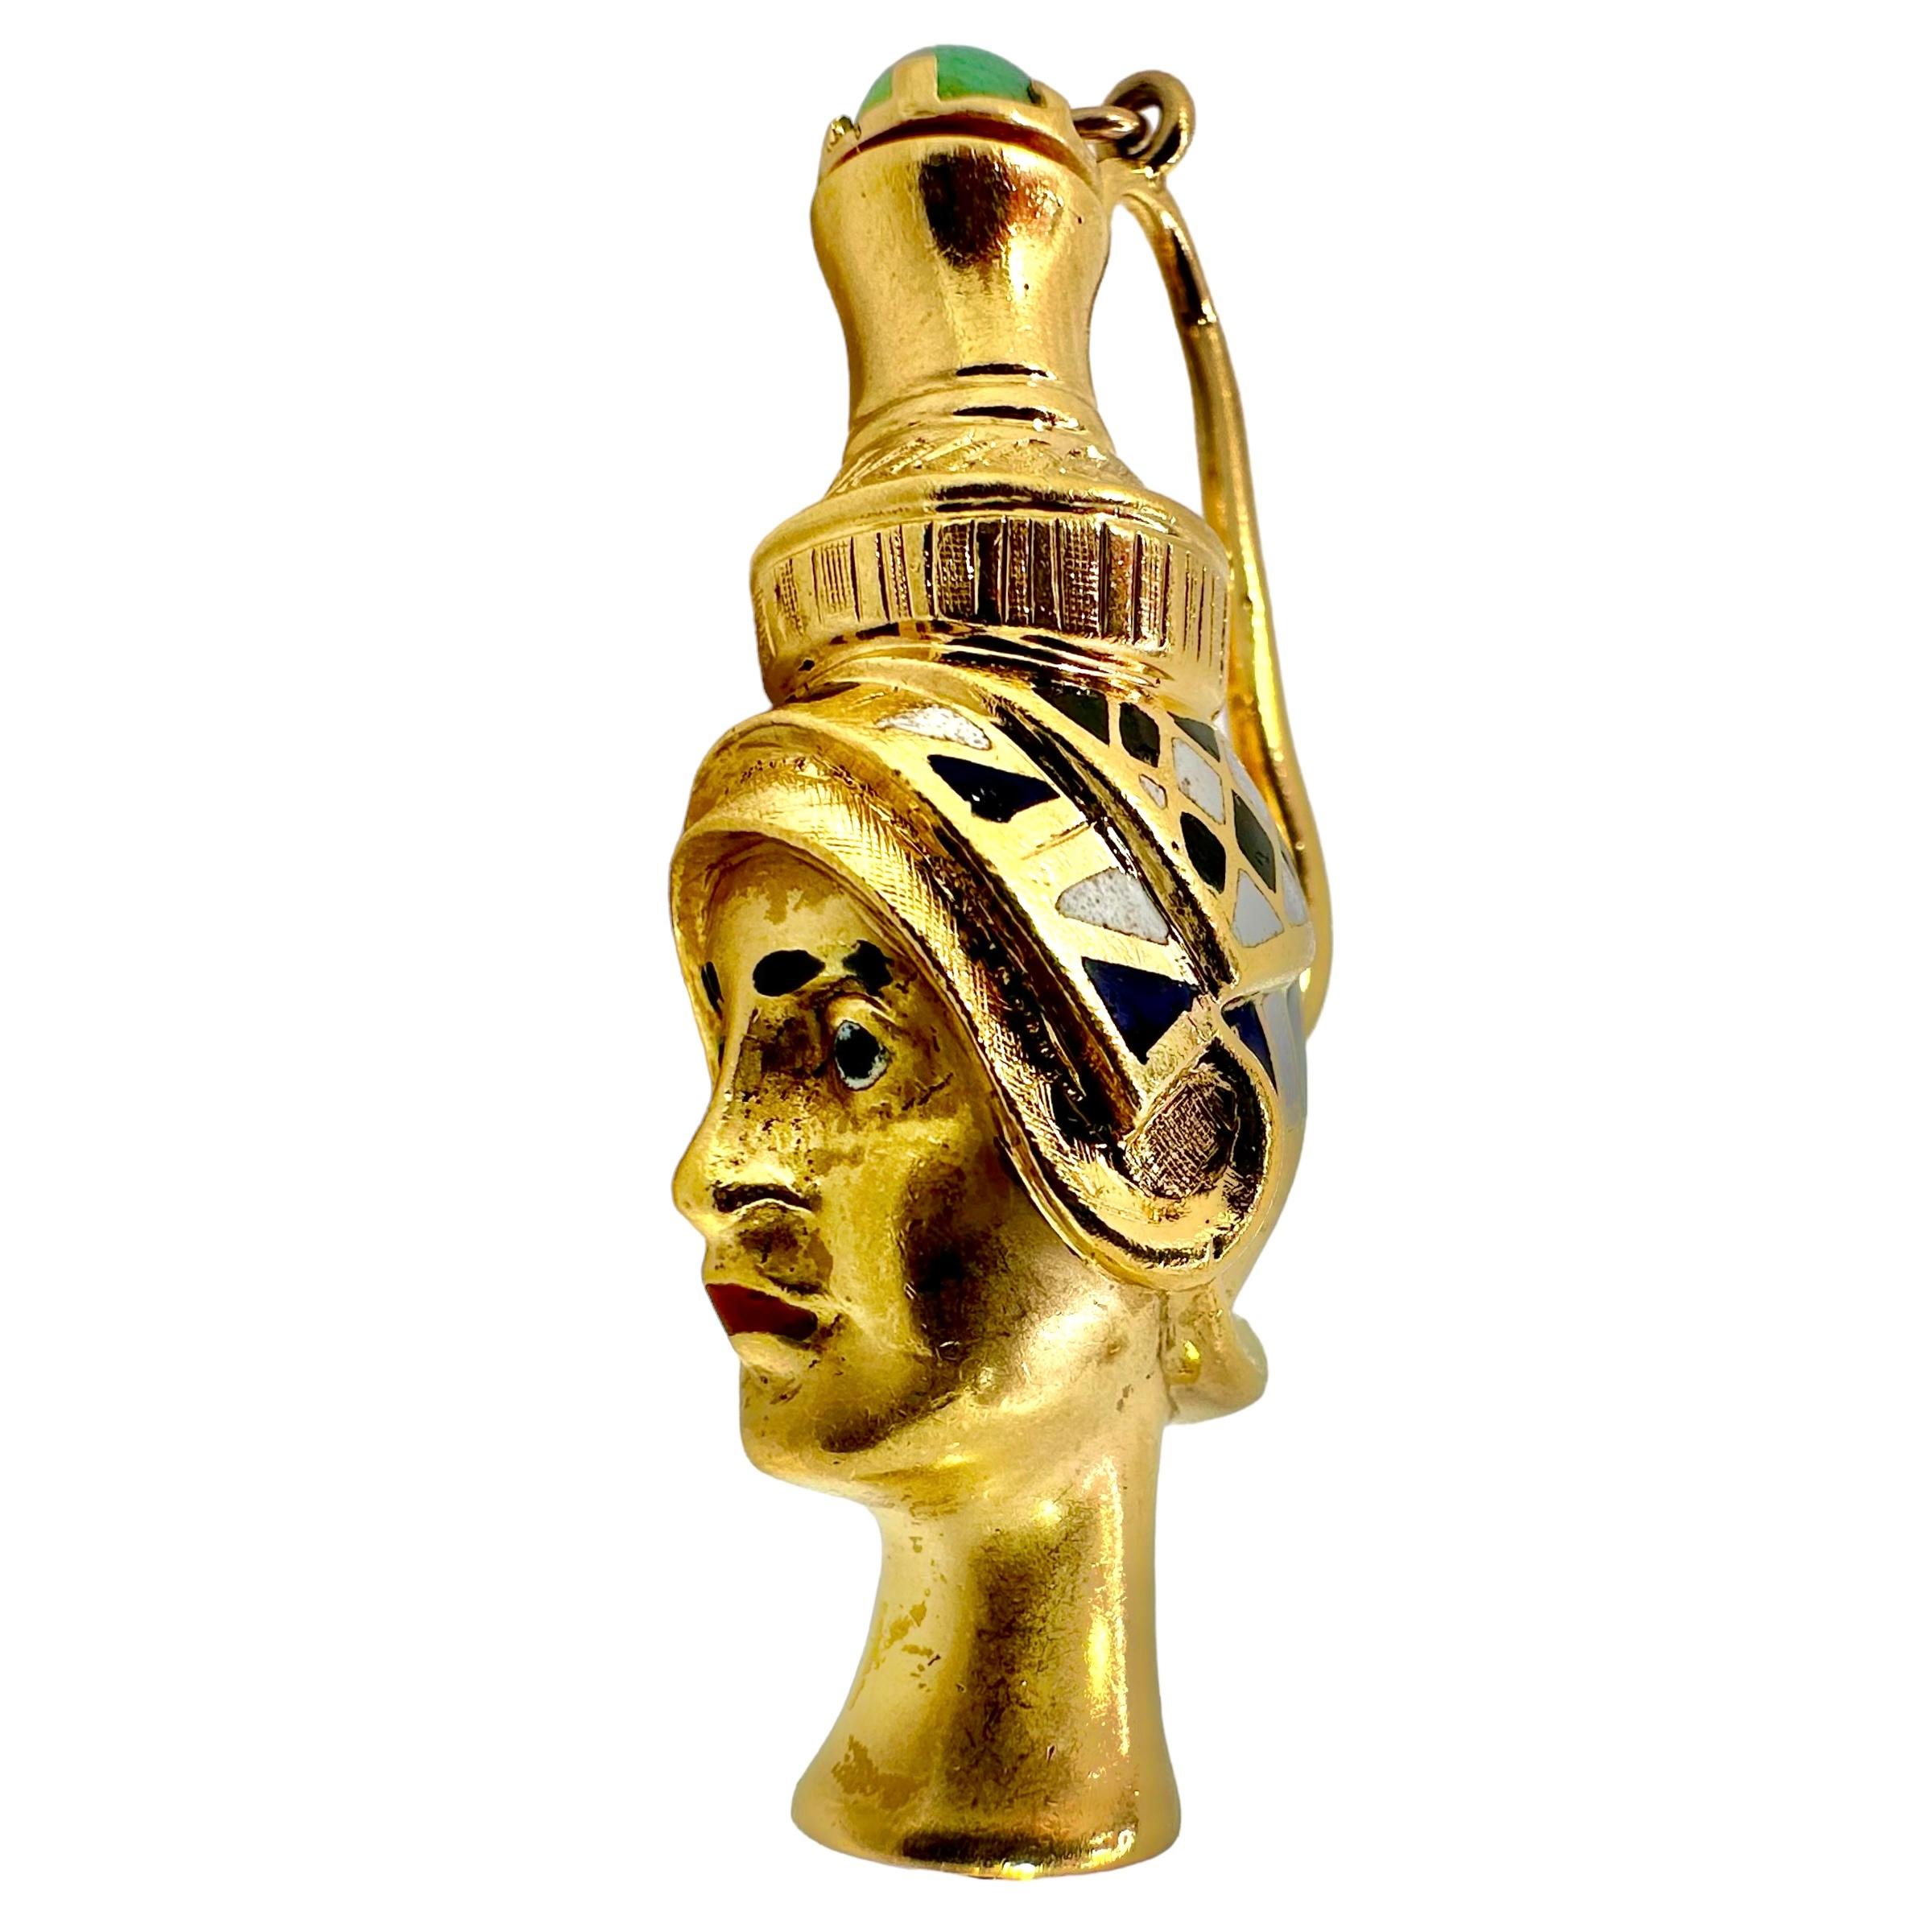 Cette amulette de parfum italienne du milieu du XXe siècle, très imaginative et artistiquement travaillée, se présente sous la forme d'une tête égyptienne antique. La magnifique caricature d'une grande prêtresse ou d'un pharaon est ornée d'émaux